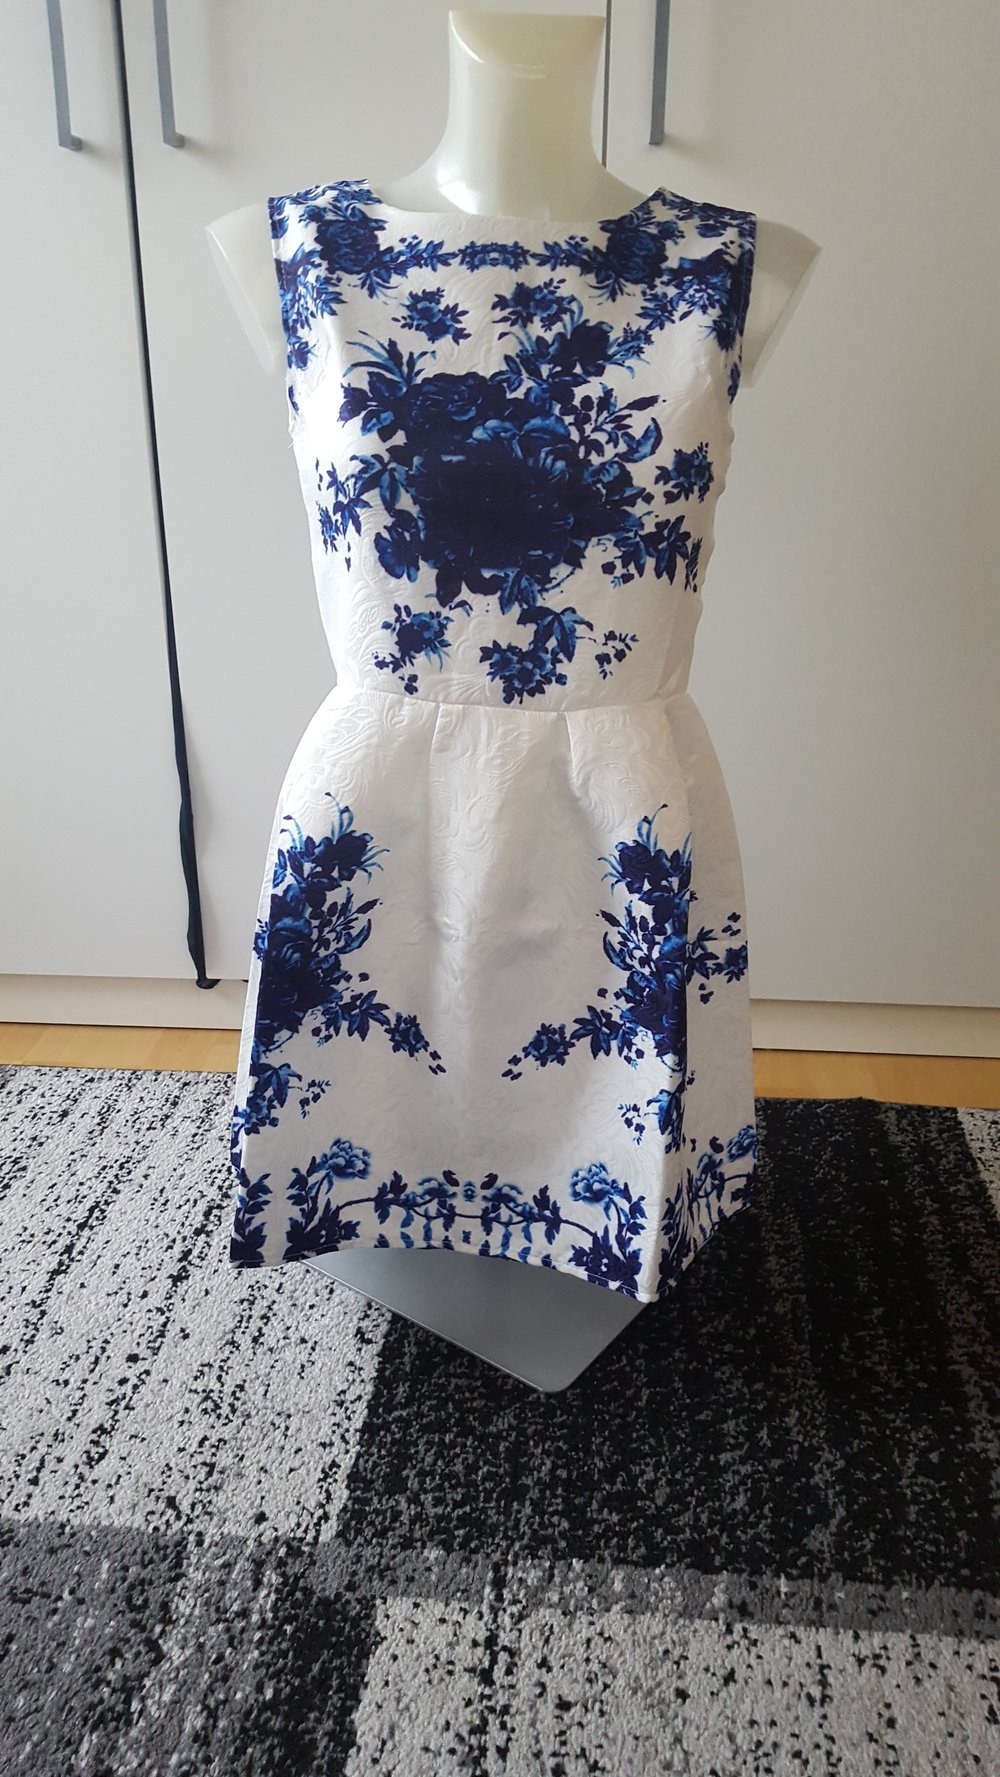 Formal Cool Blaues Kleid Mit Blumen Stylish10 Kreativ Blaues Kleid Mit Blumen Boutique